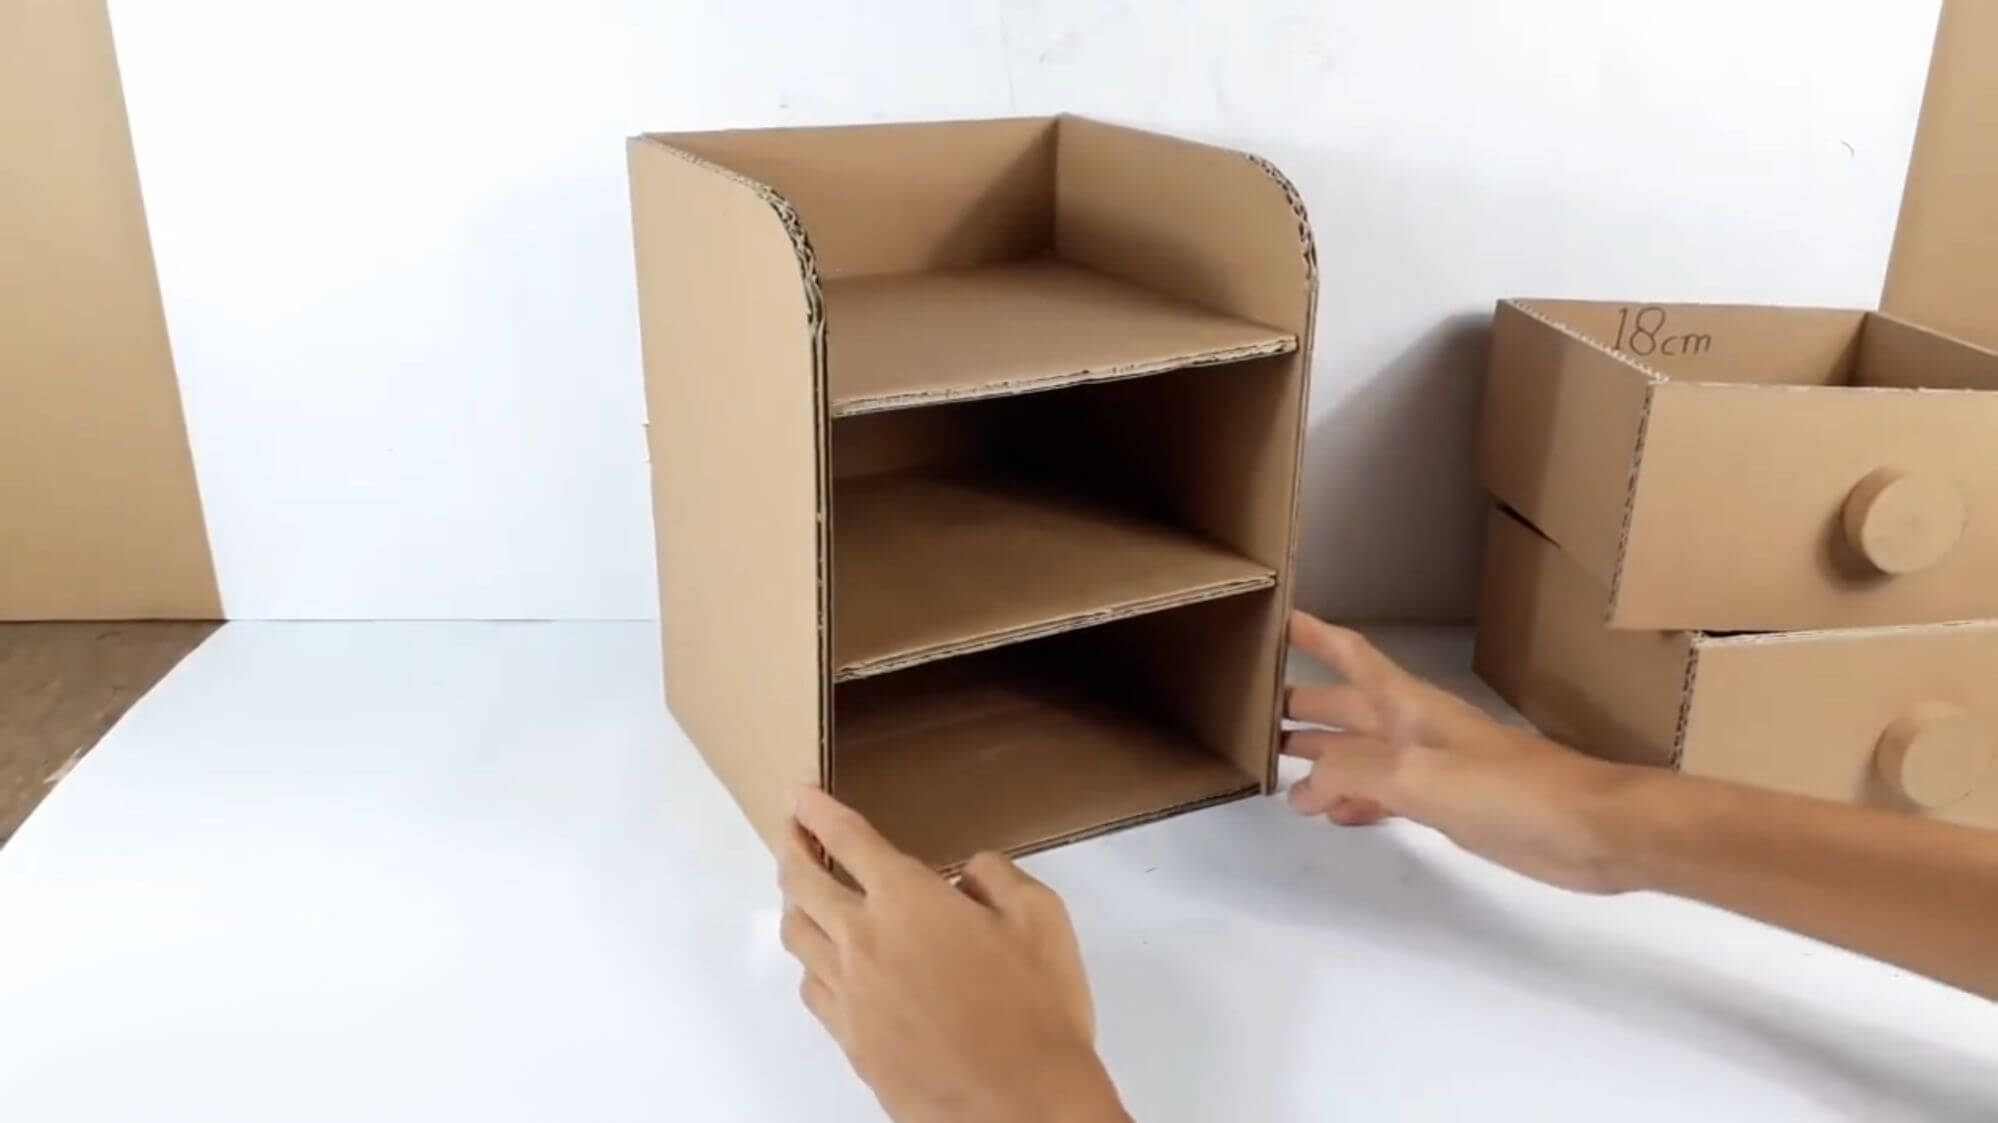 Мастер-класс декупаж моделирование конструирование комодик из картона гуашь картон гофрированный клей коробки краска салфетки скотч